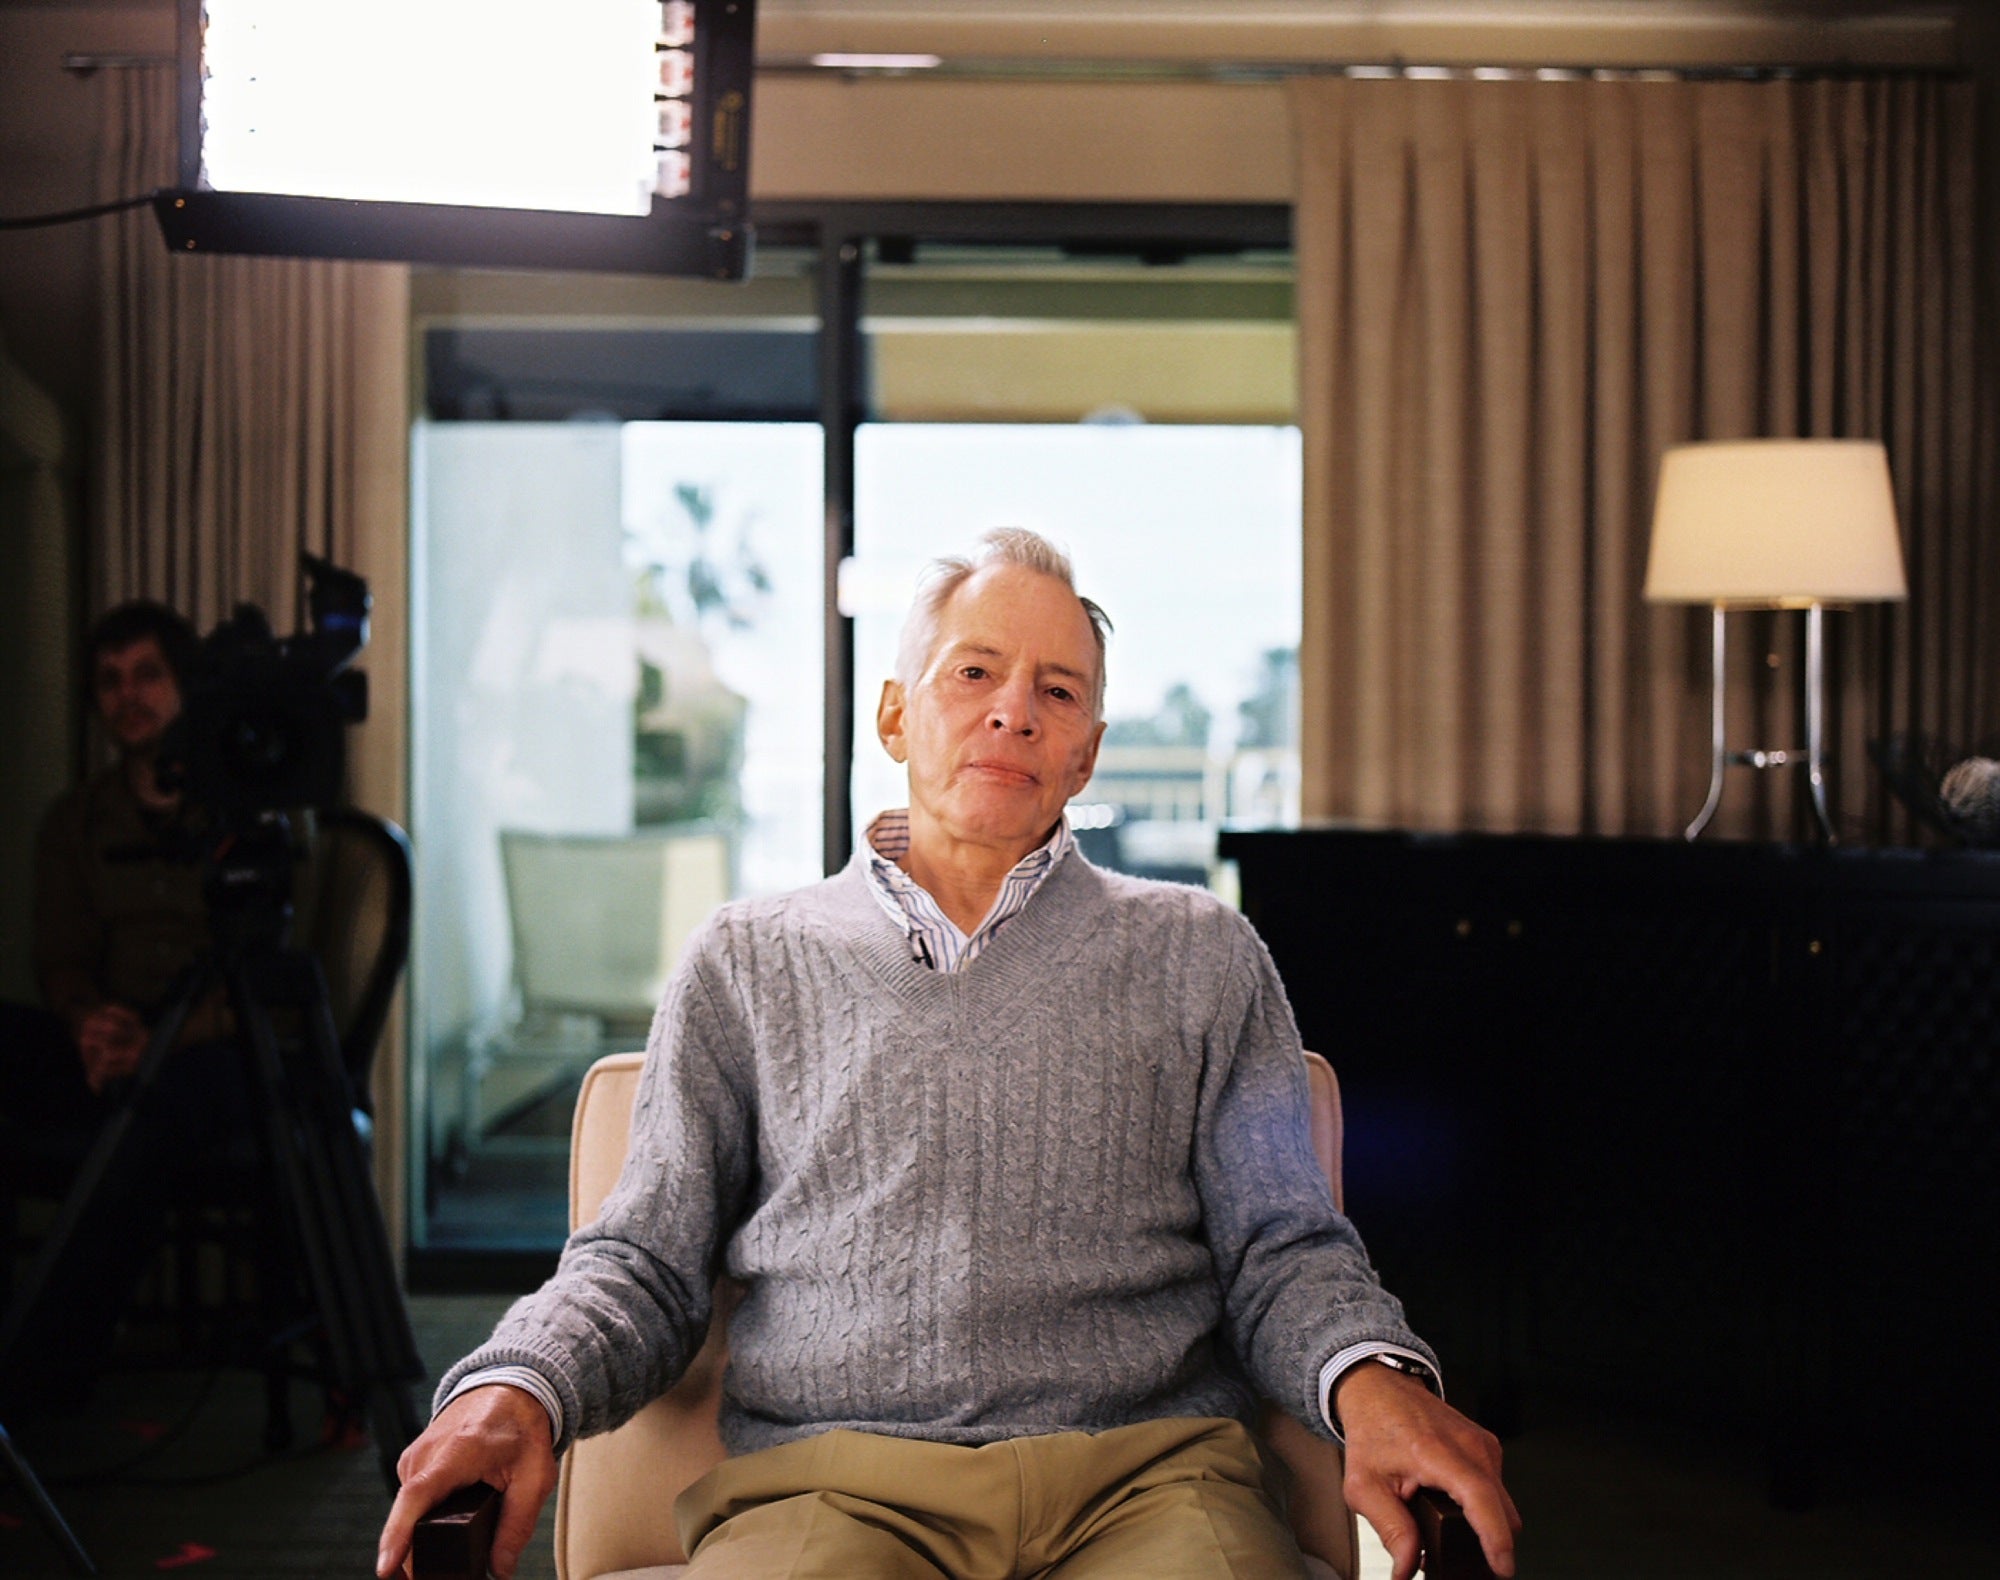 Robert Durst en un fotograma del documental de HBO ‘The Jinx’ en el que confesó: “Los maté a todos”.